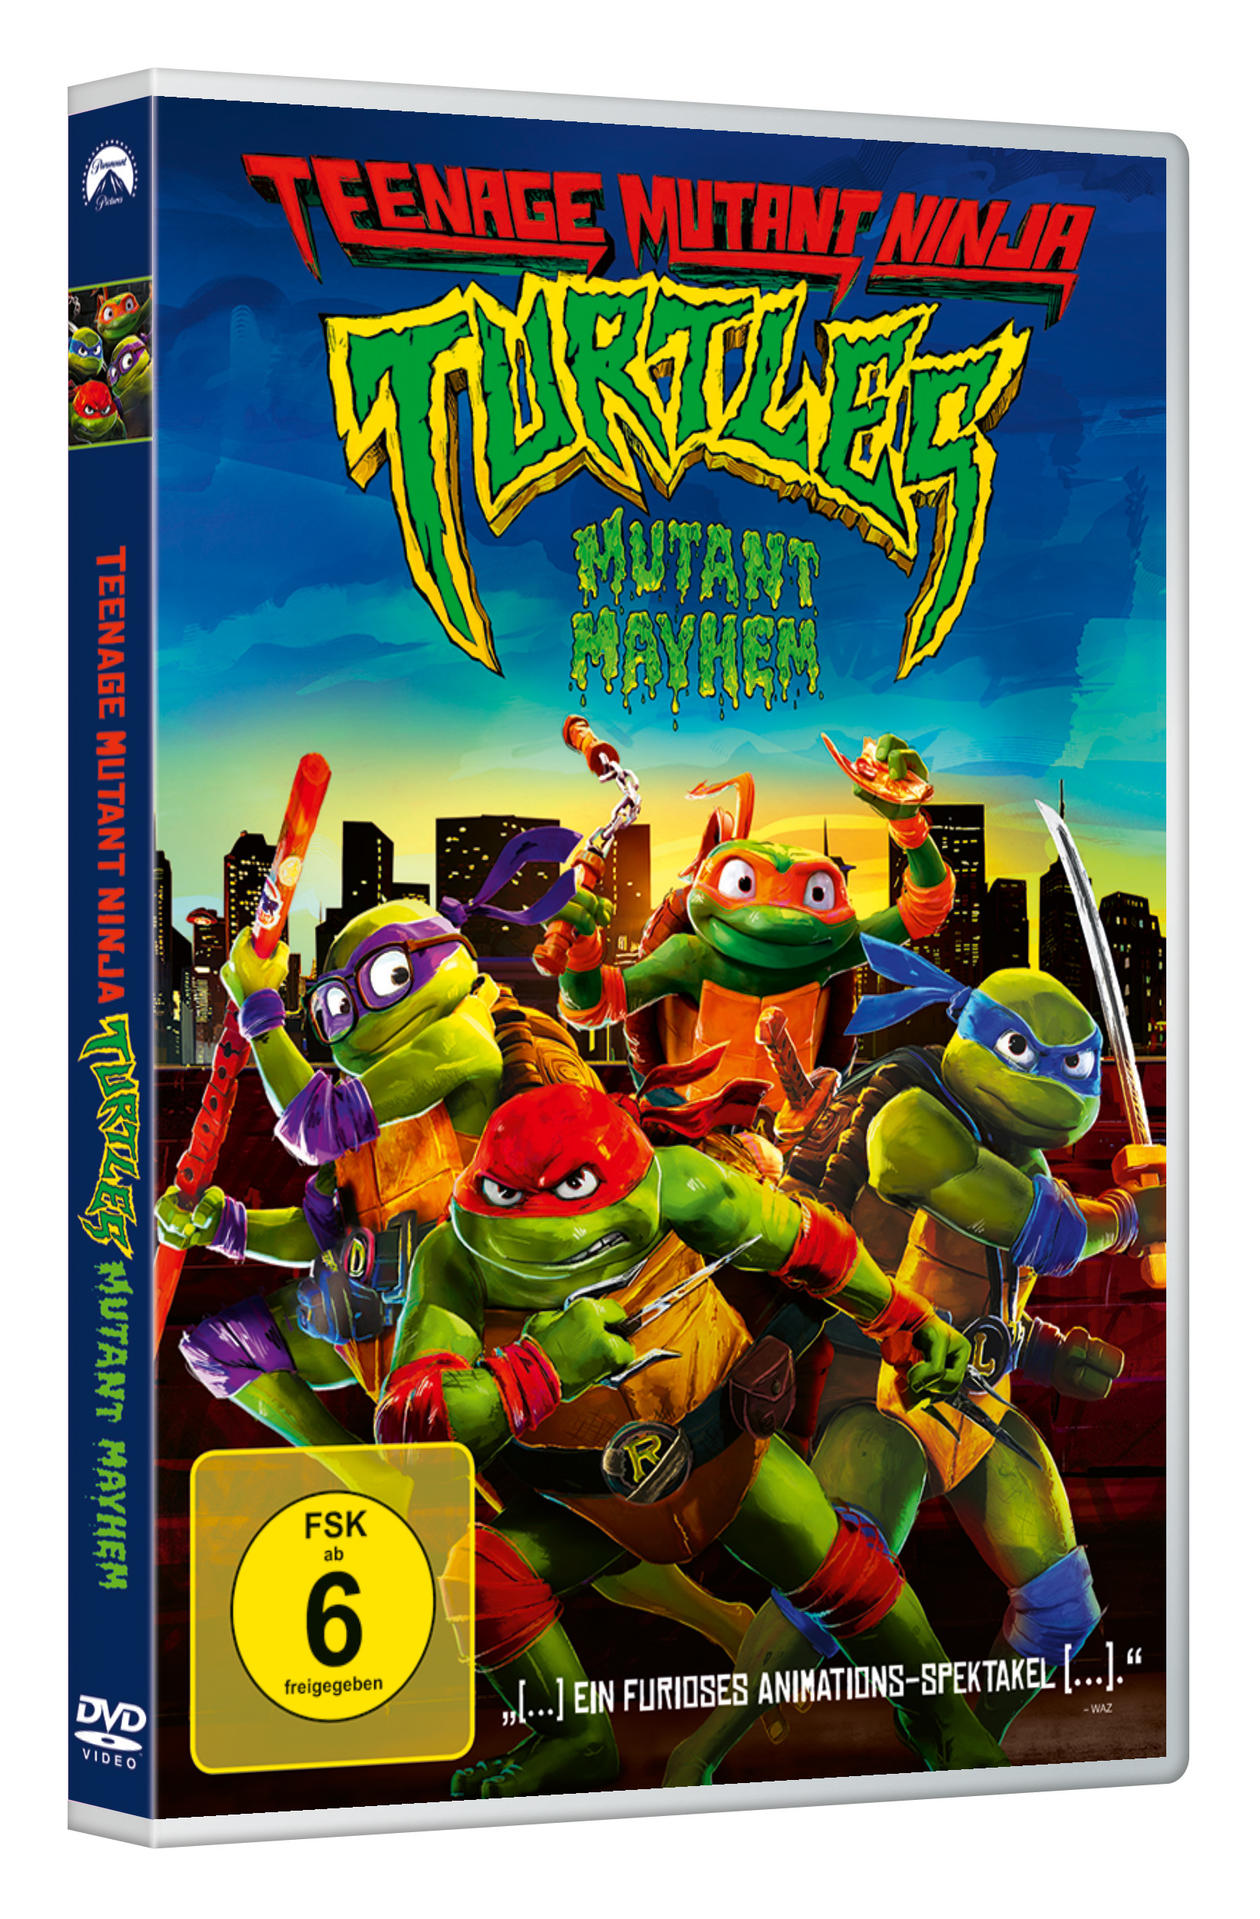 Teenage Mutant Ninja Turtles: Mutant Mayhem DVD